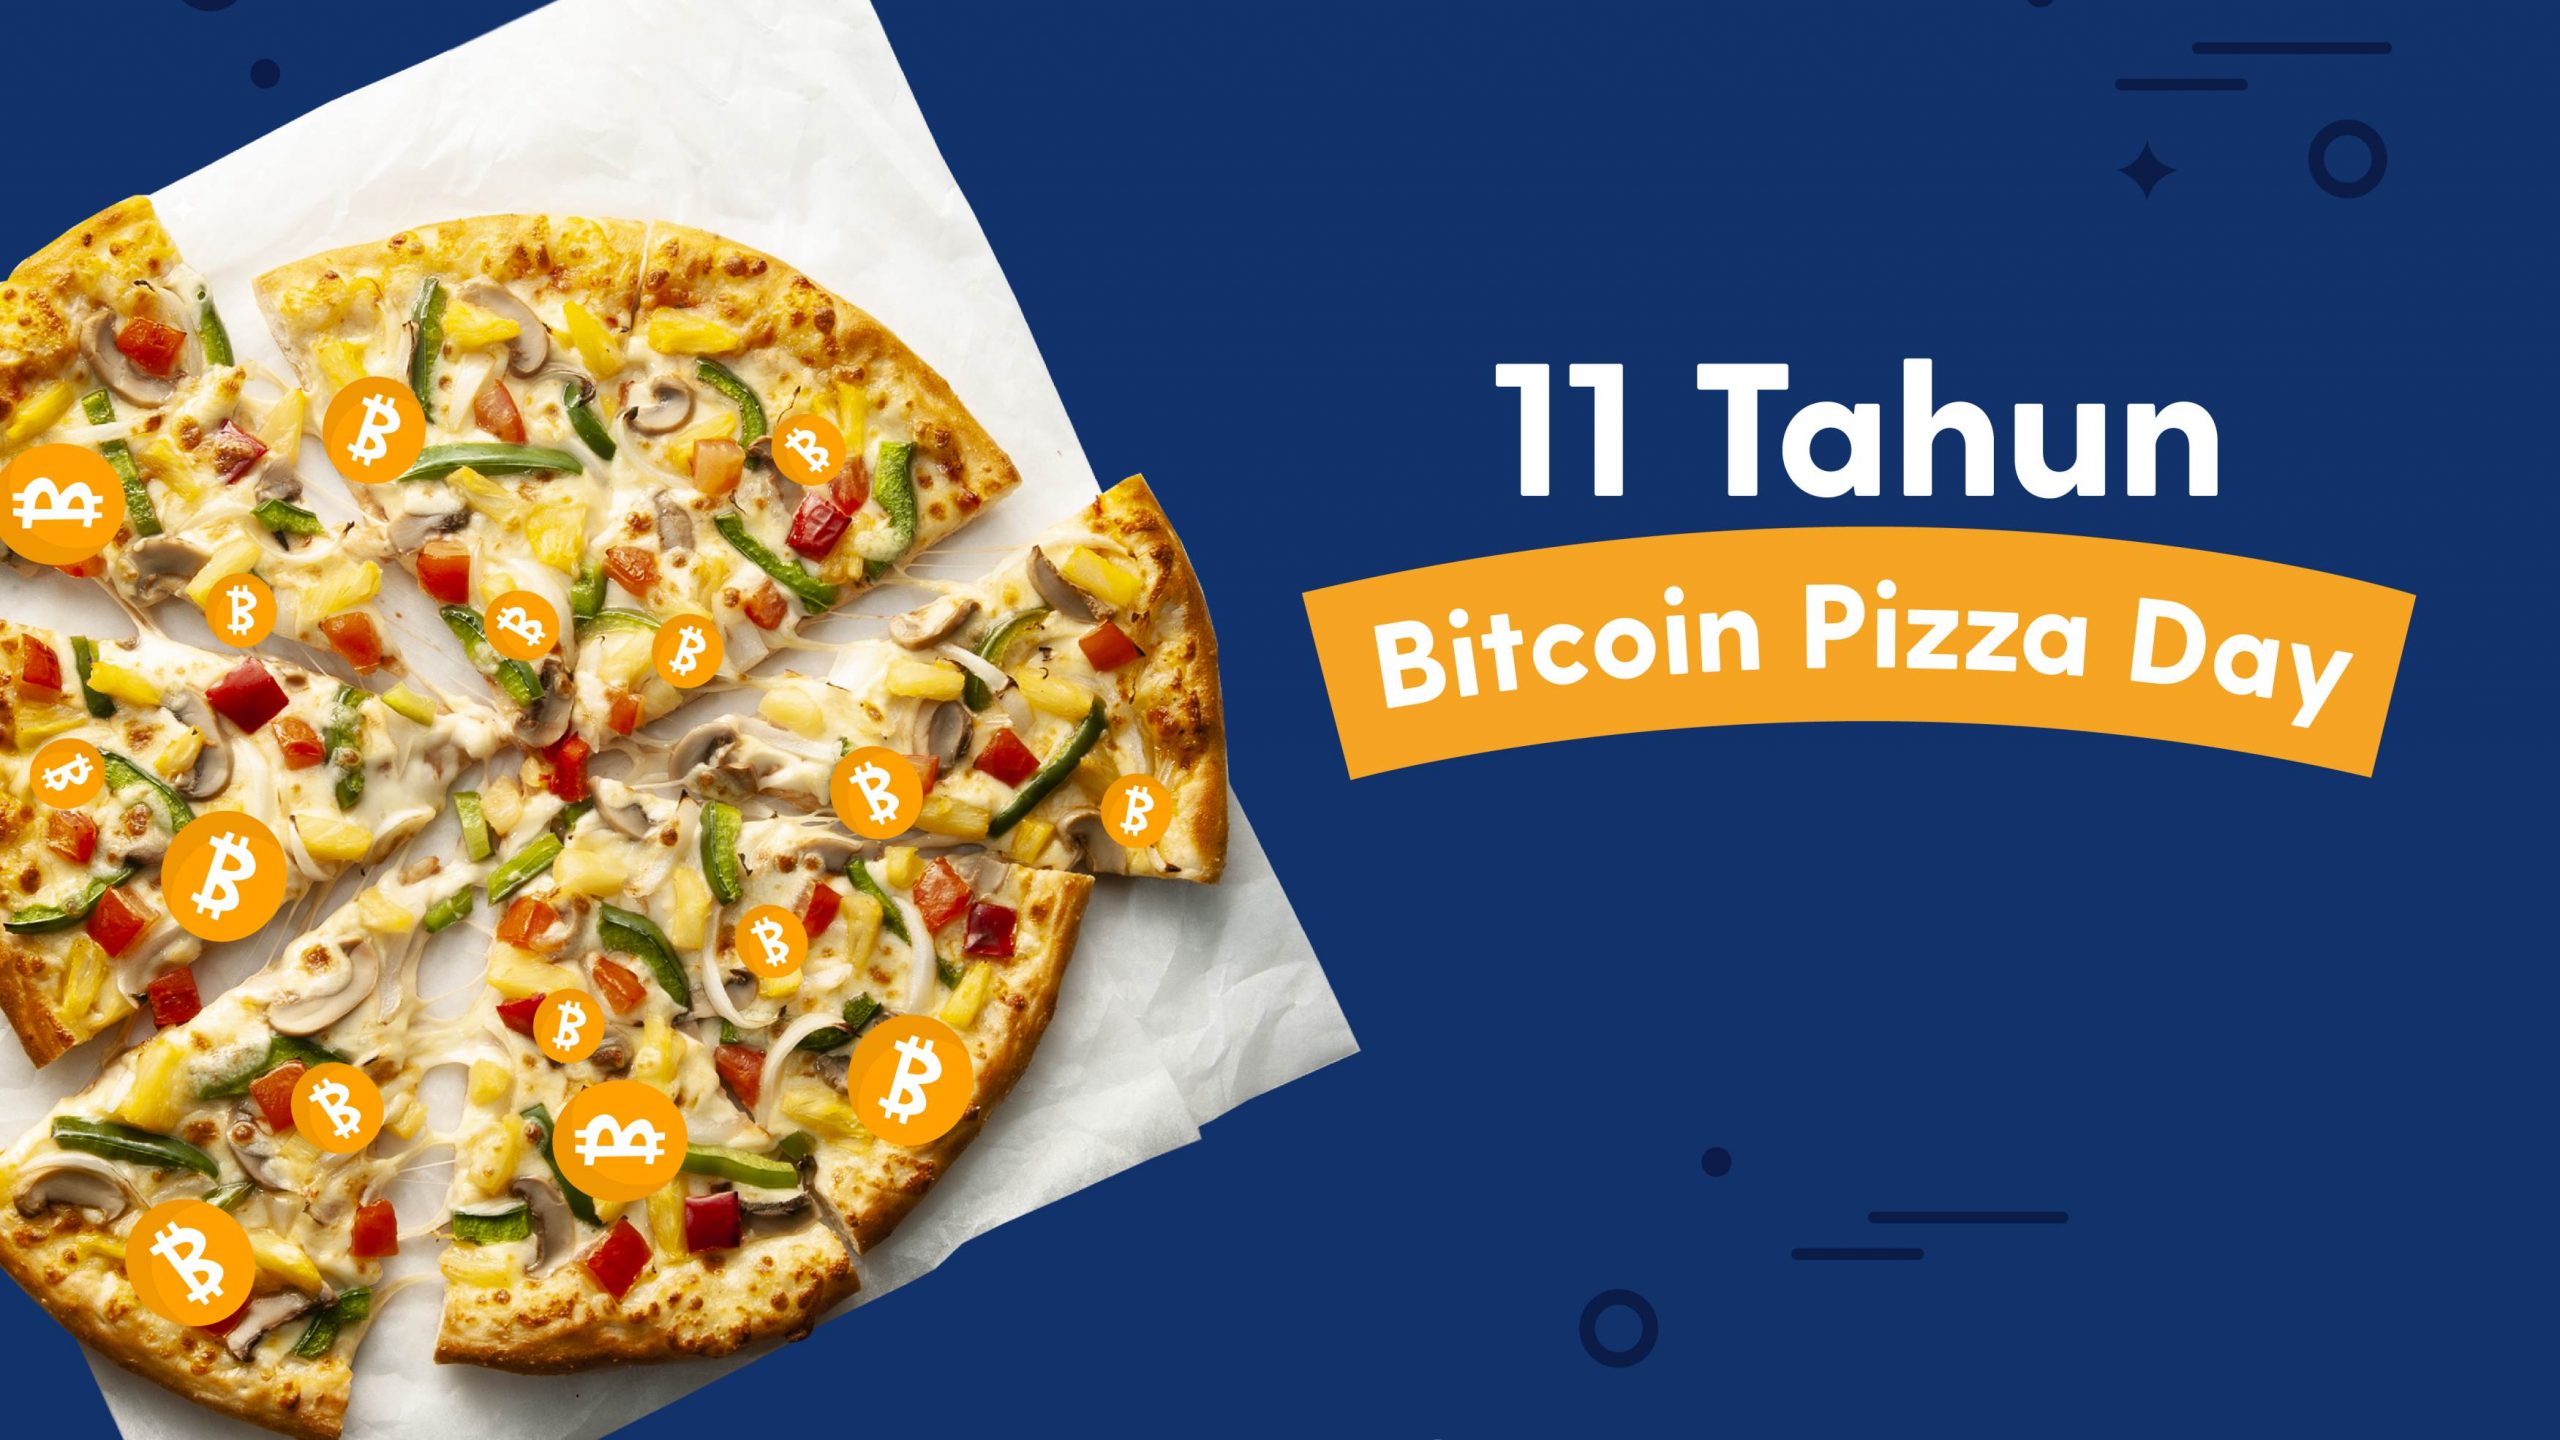 Luno Kini Mempunyai Lebih 300,000 Pengguna Di Malaysia – Menyambut Hari Bitcoin Pizza